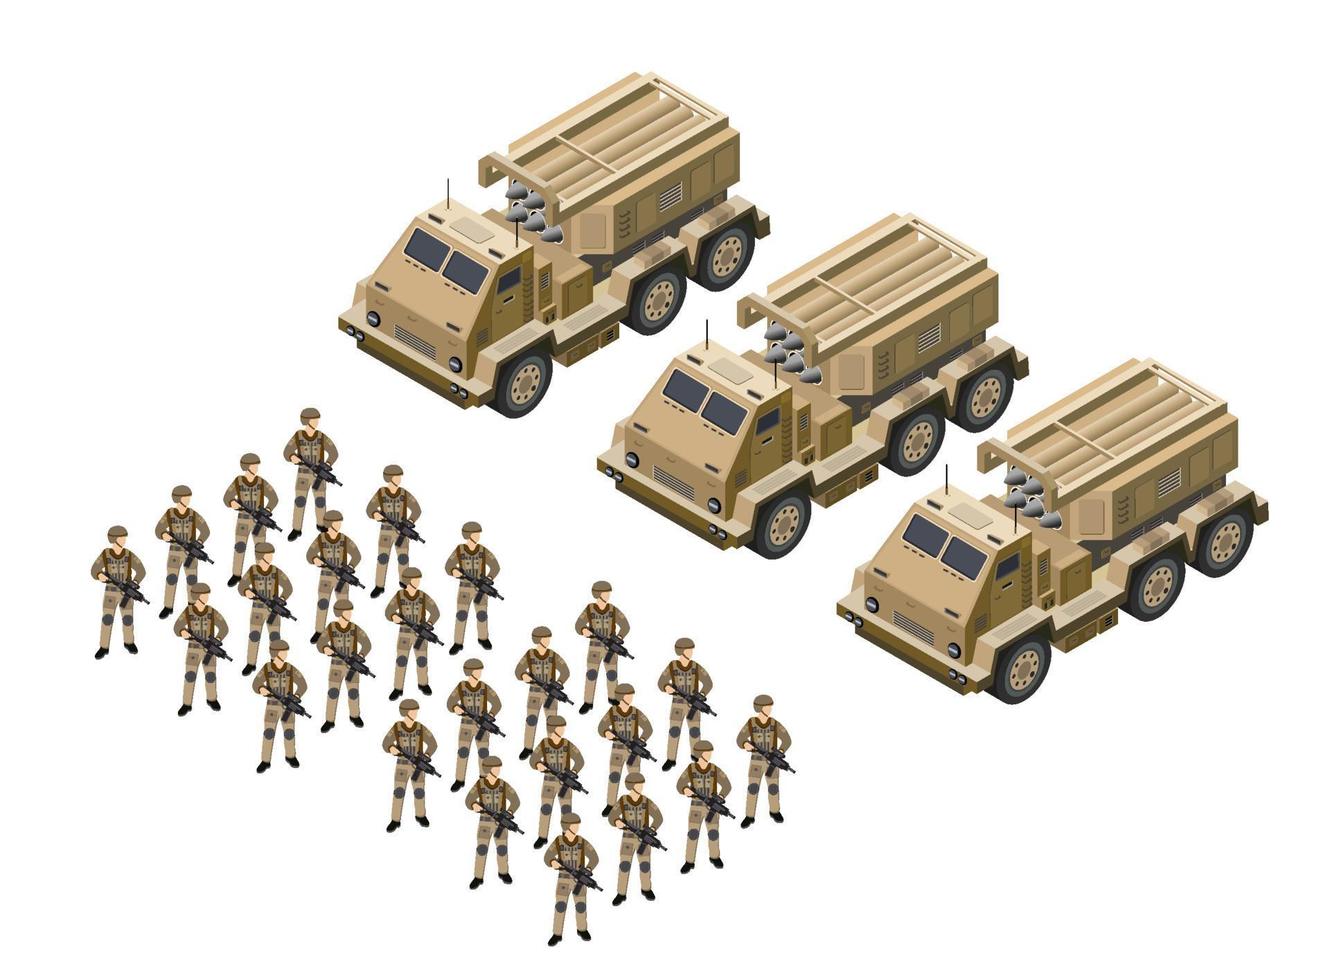 lançamento múltiplo sistemas de foguetes veículos do exército mísseis do exército defesa camuflagem. ilustração em vetor 3d isométrica.